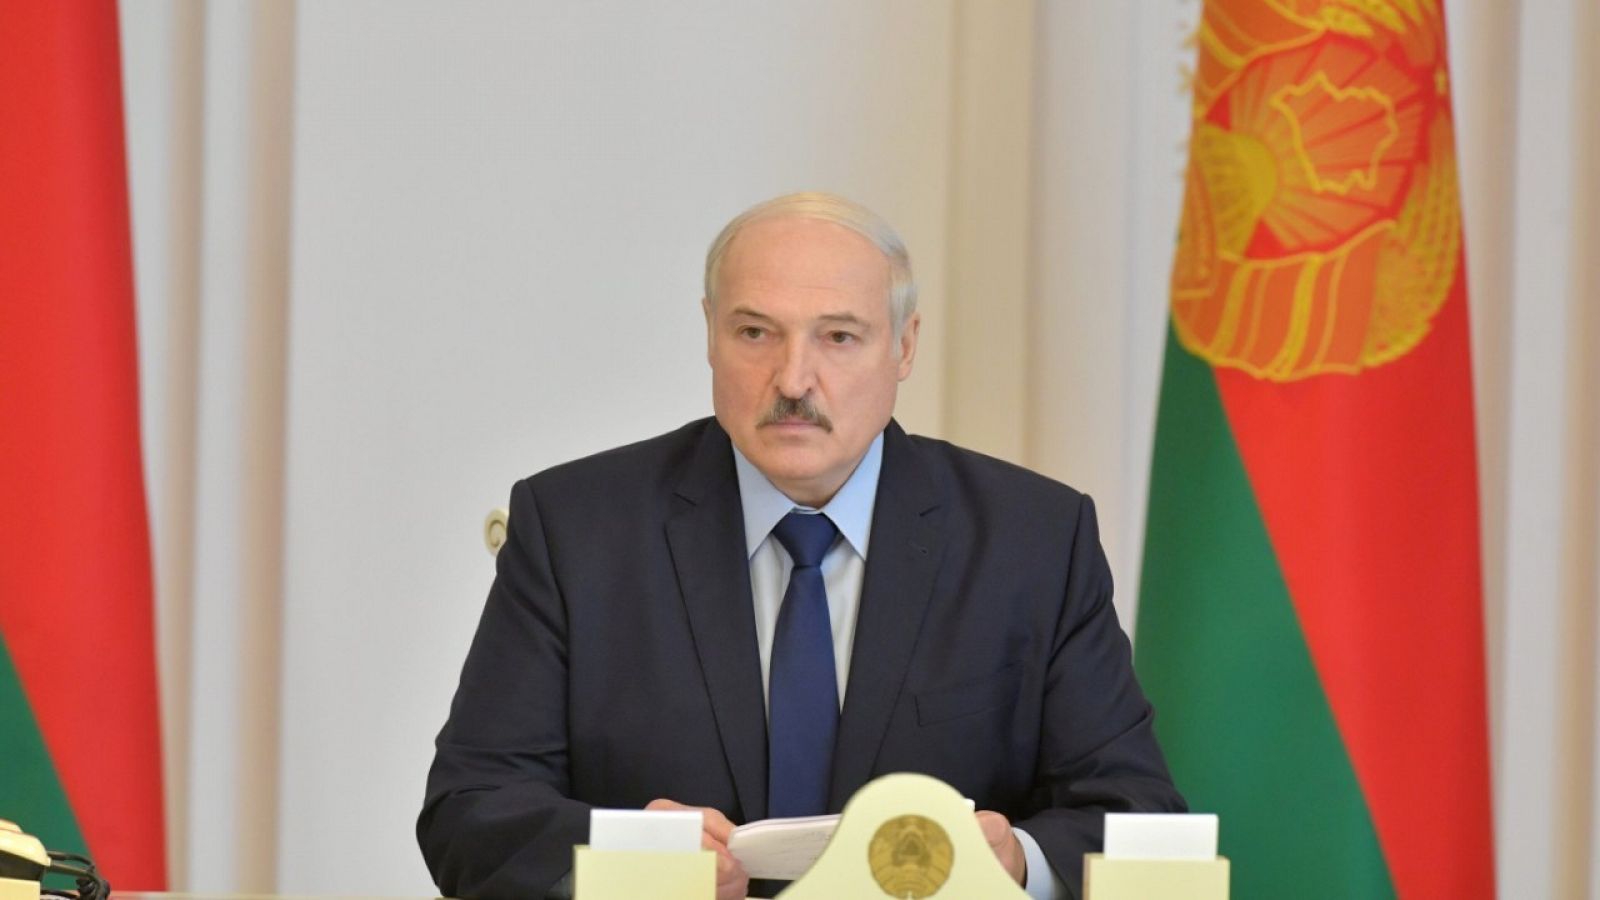 El presidente de Bielorrusia, Alexandr Lukashenko, durante una reunión en Minsk el 14 de agosto de 2020.